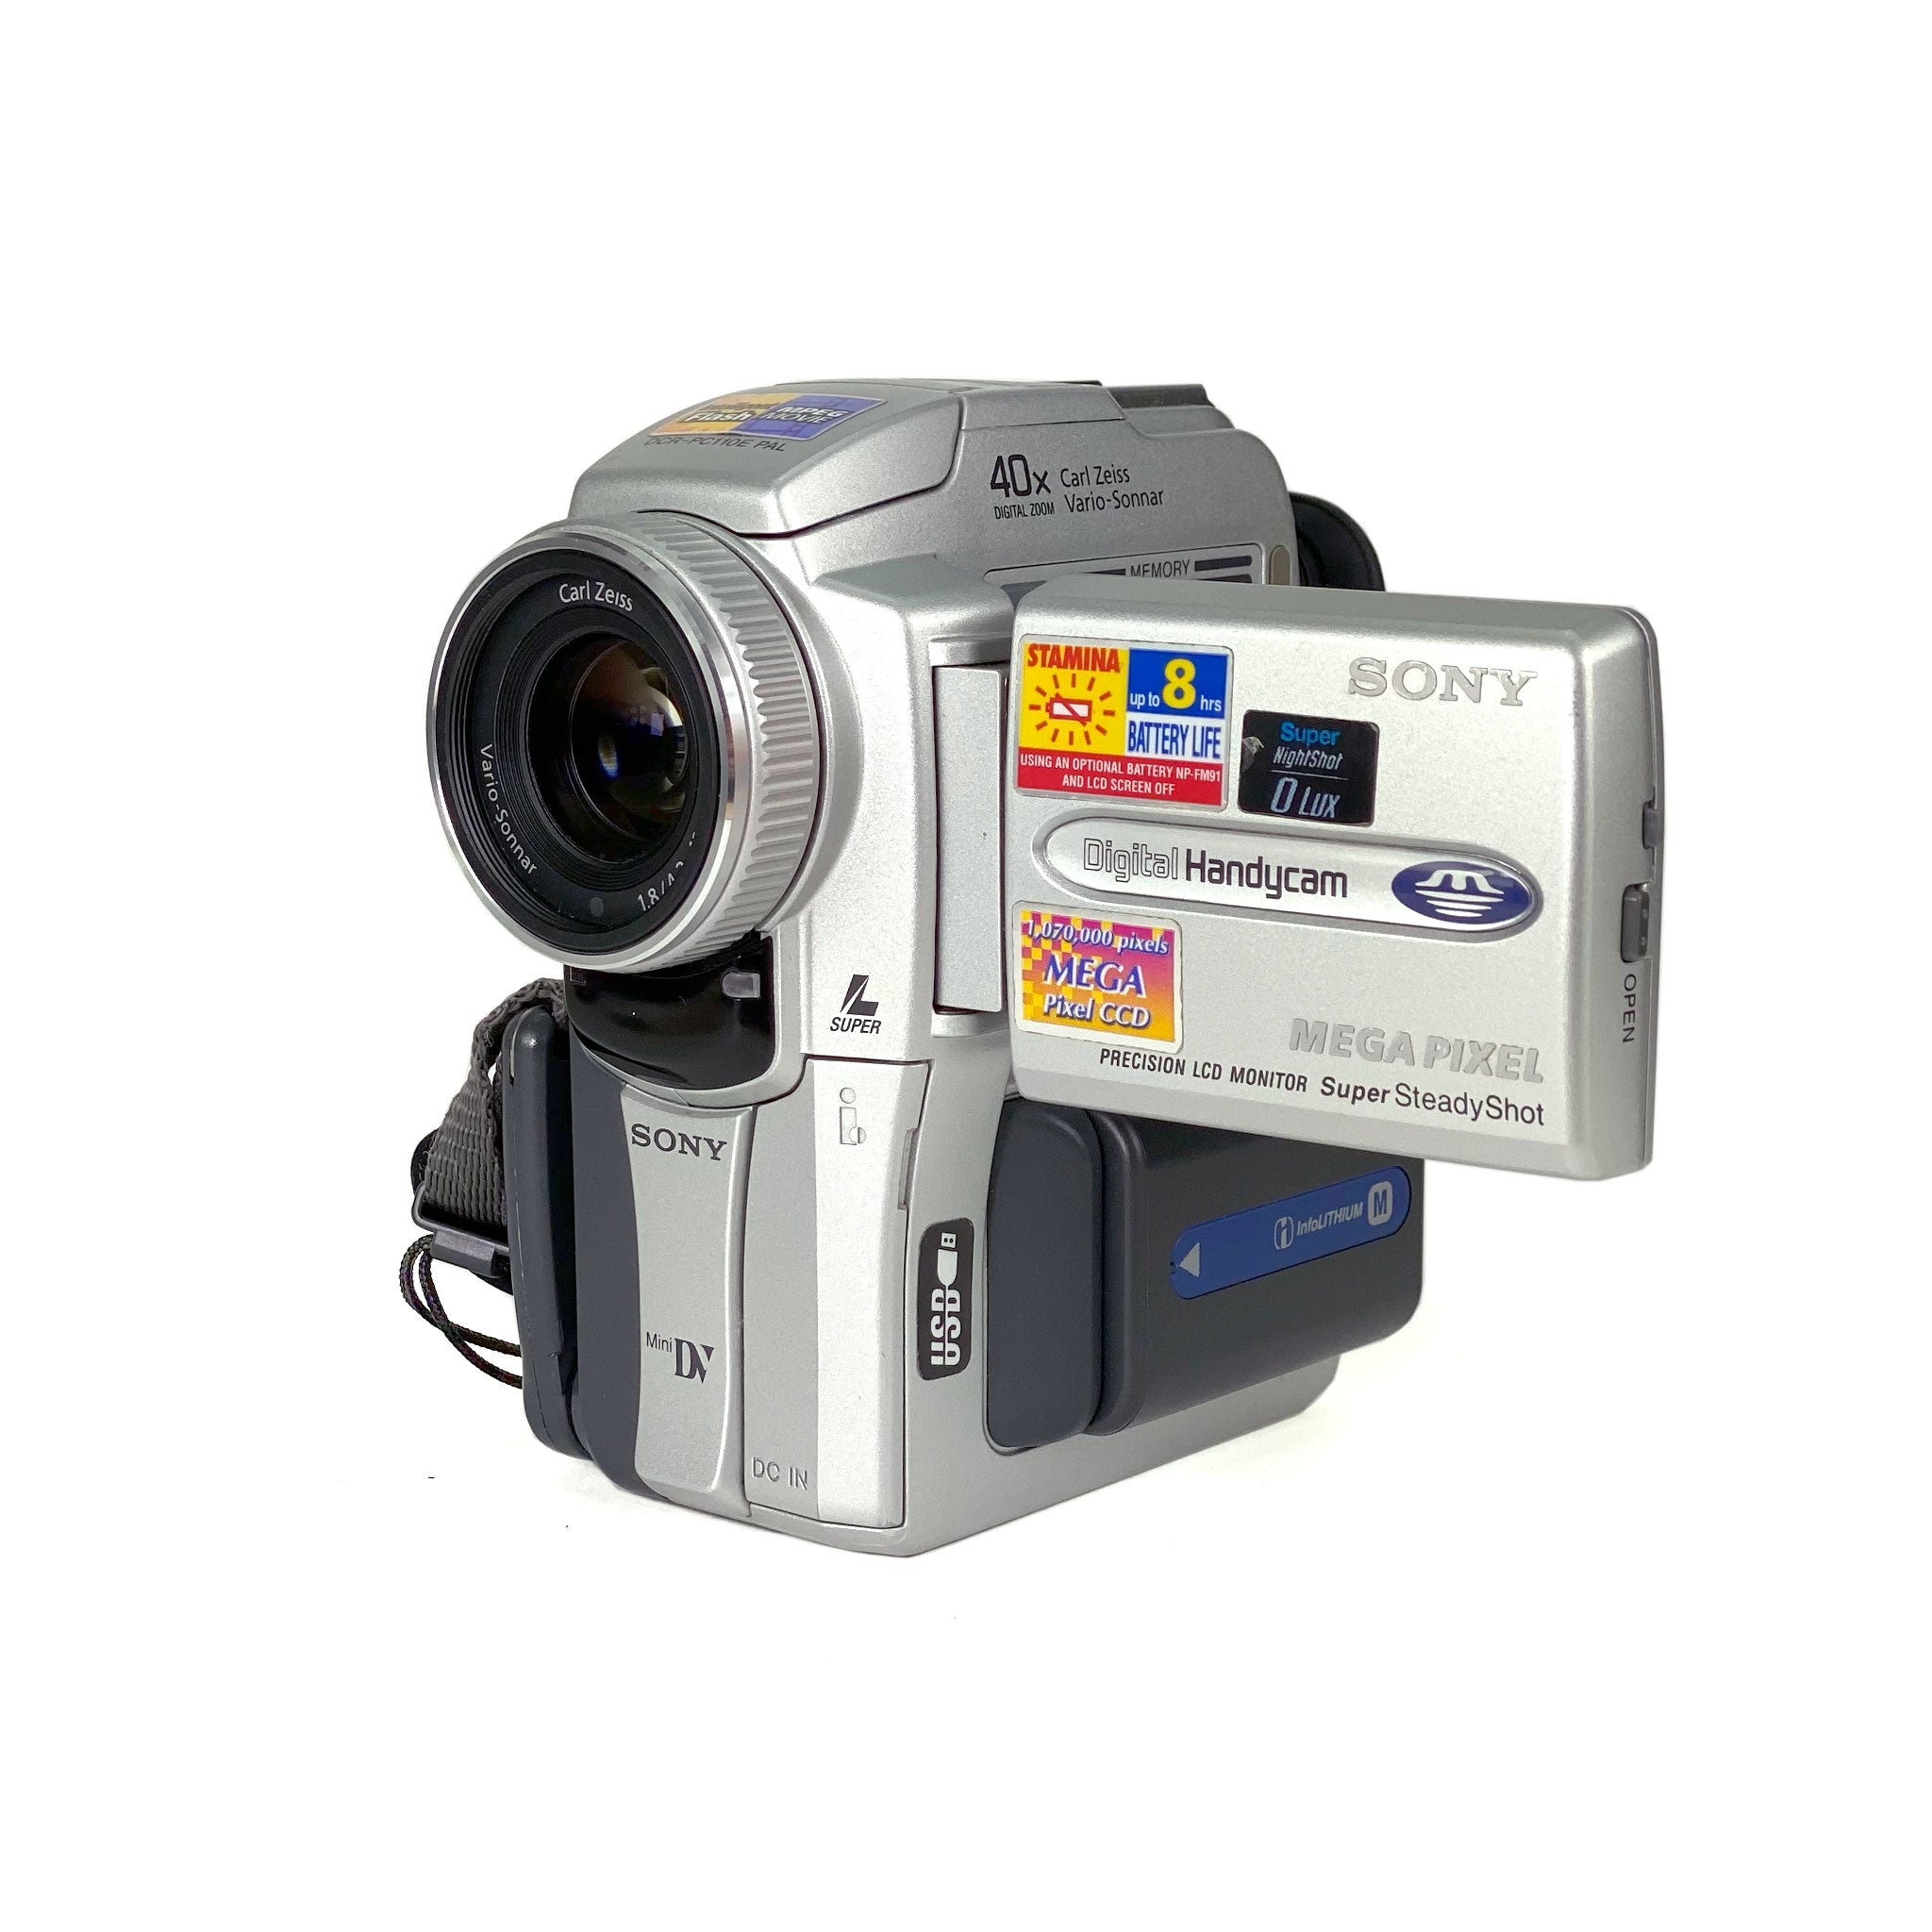 Sony Digital Handycam DCR-PC110 - ビデオカメラ